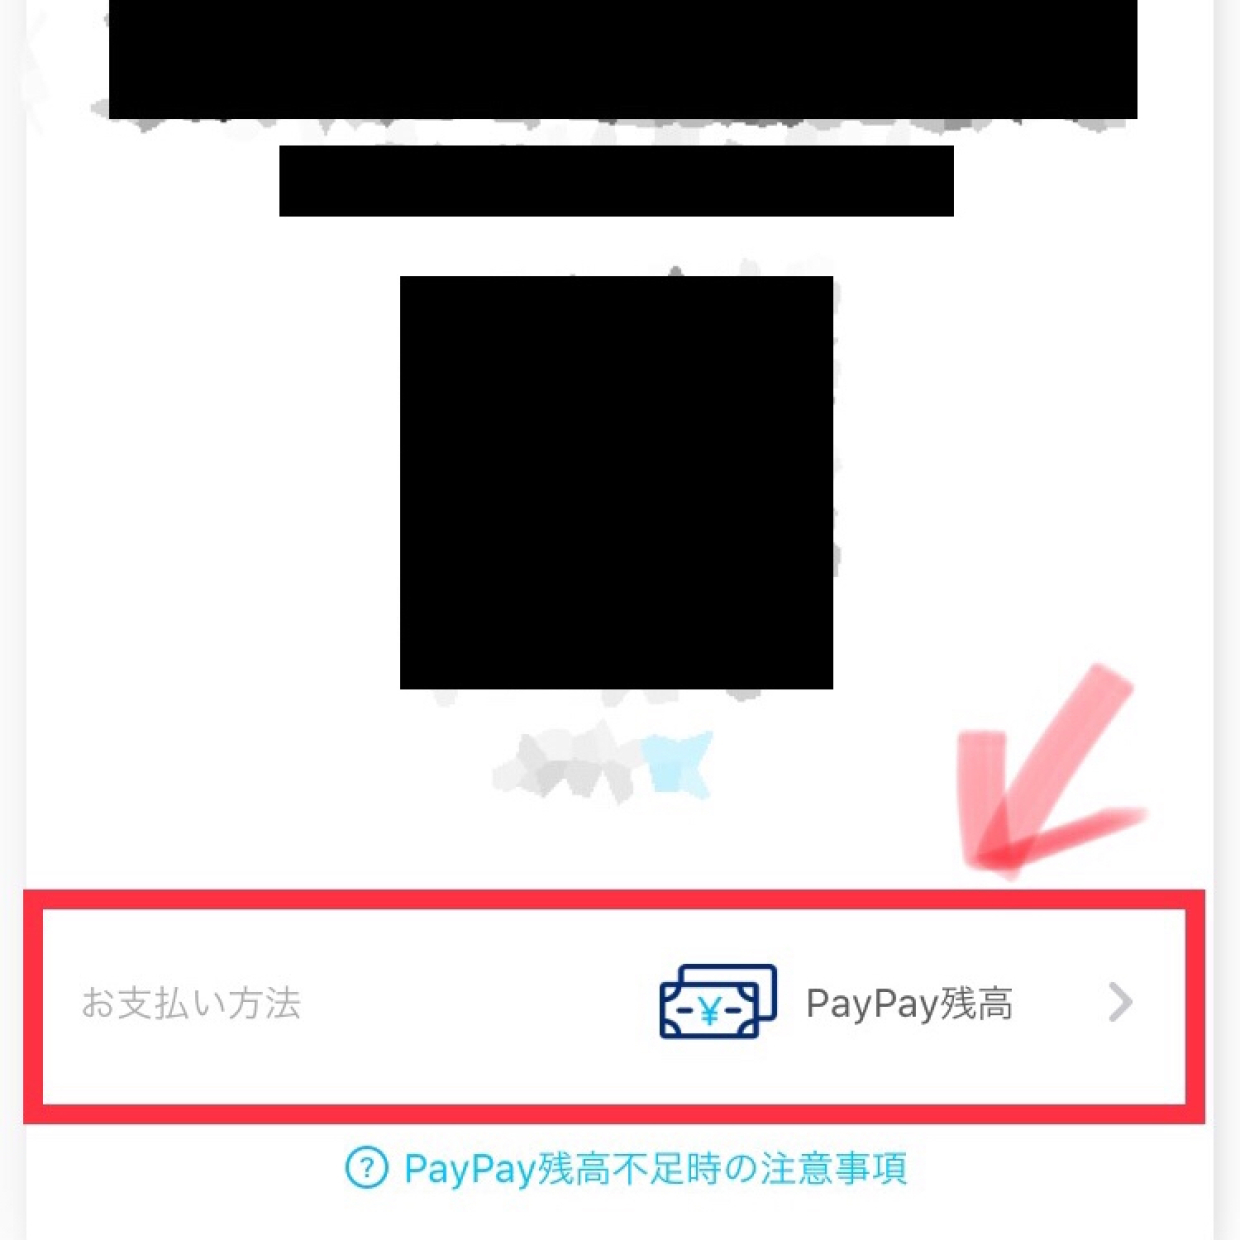  【PayPay】アプリの落とし穴！?チャージ残高から支払いたい場合には注意すべし！ 